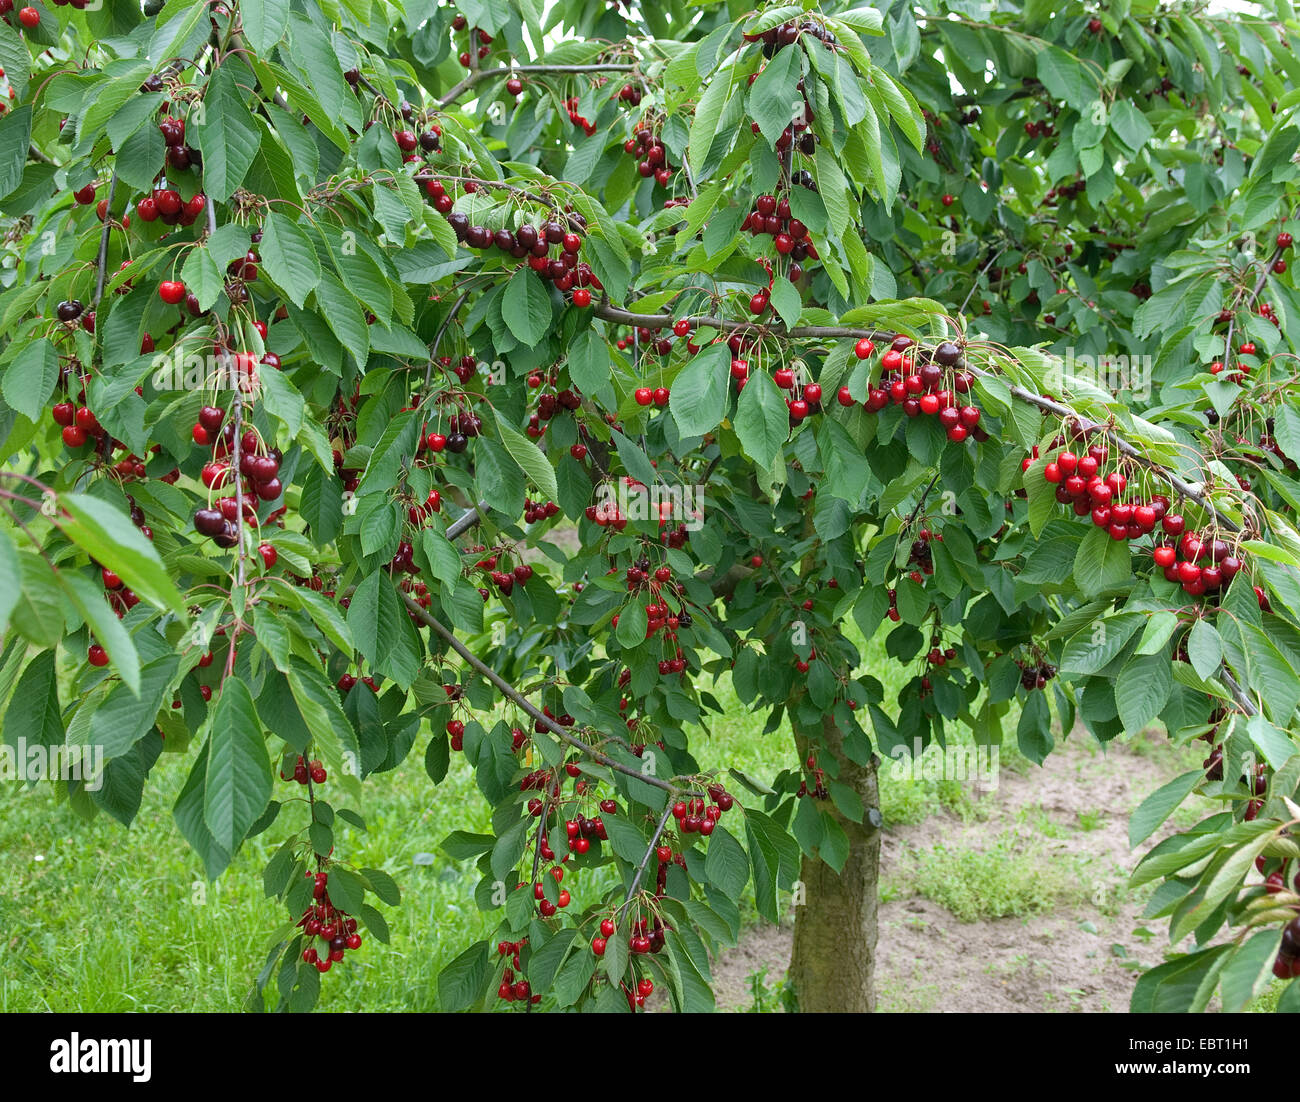 Cherry tree, Sweet cherry (Prunus avium 'Bianca', Prunus avium Bianca), cultivar Bianca, cherries on a tree Stock Photo